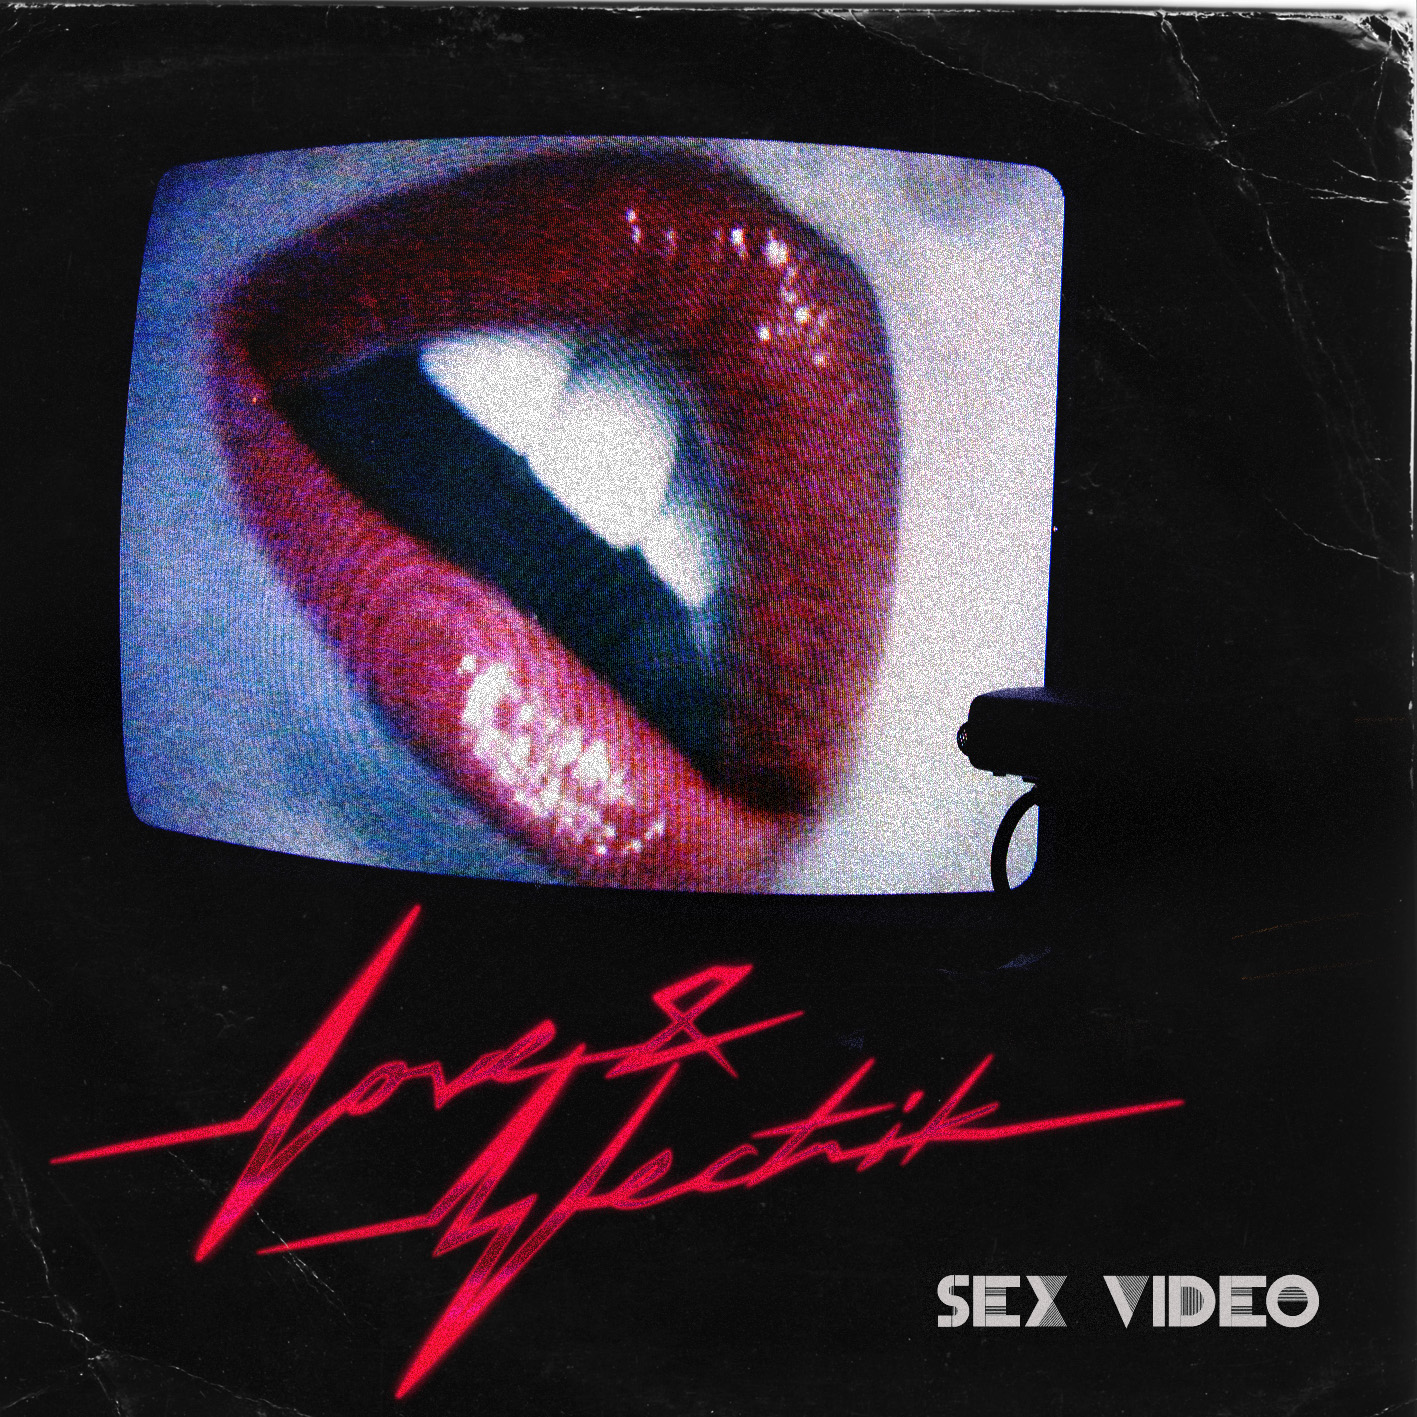 L&E - SEX VIDEO FRONT COVER